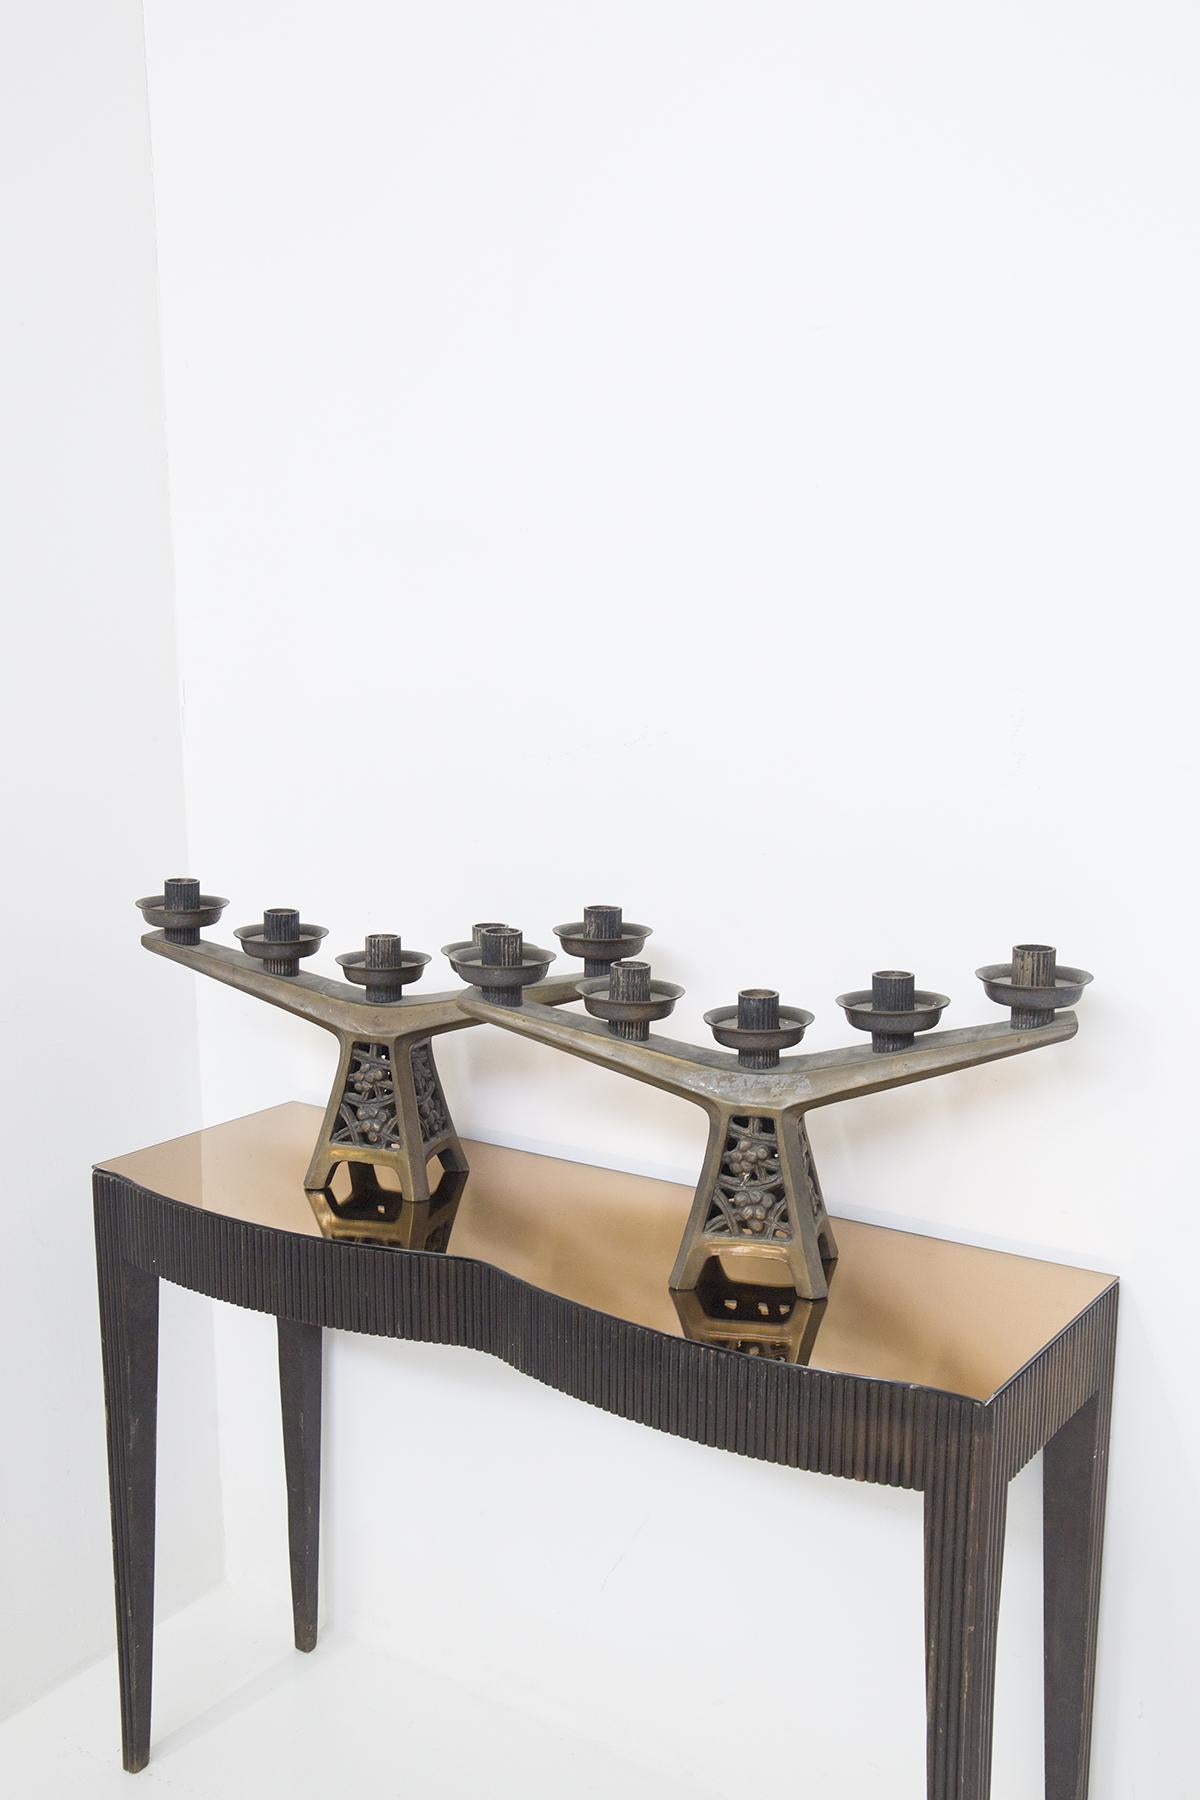 Belle paire de candélabres datant du début des années 1900, de fabrication française.
Réalisés entièrement en bronze, ils ont une base en forme de tour, avec quatre pieds de support carrés. La base présente de véritables décorations florales, très